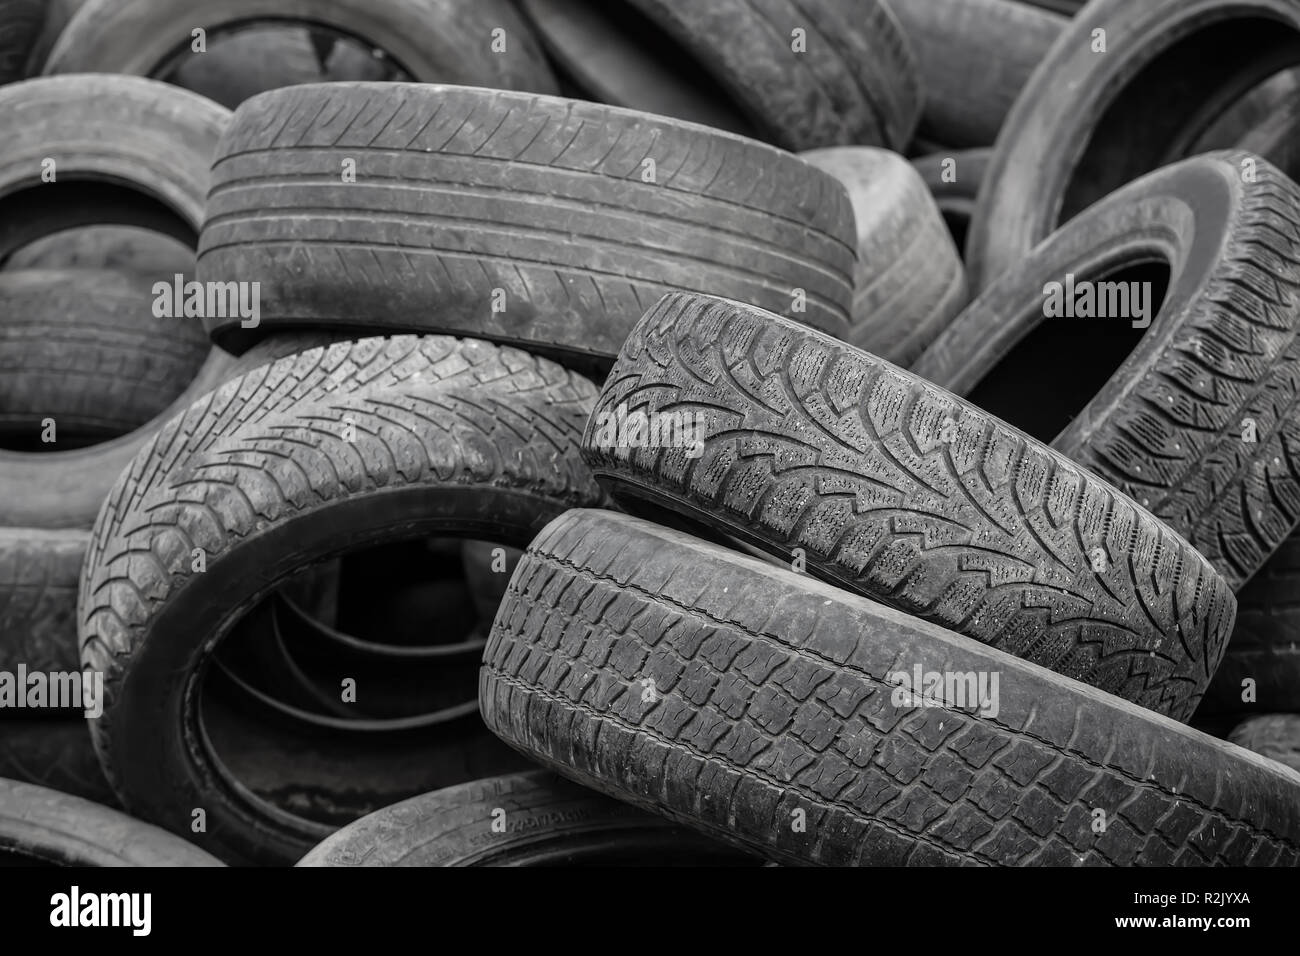 Les vieux pneus usés utilisés pour l'industrie de la gestion des déchets recyclage disposition Banque D'Images